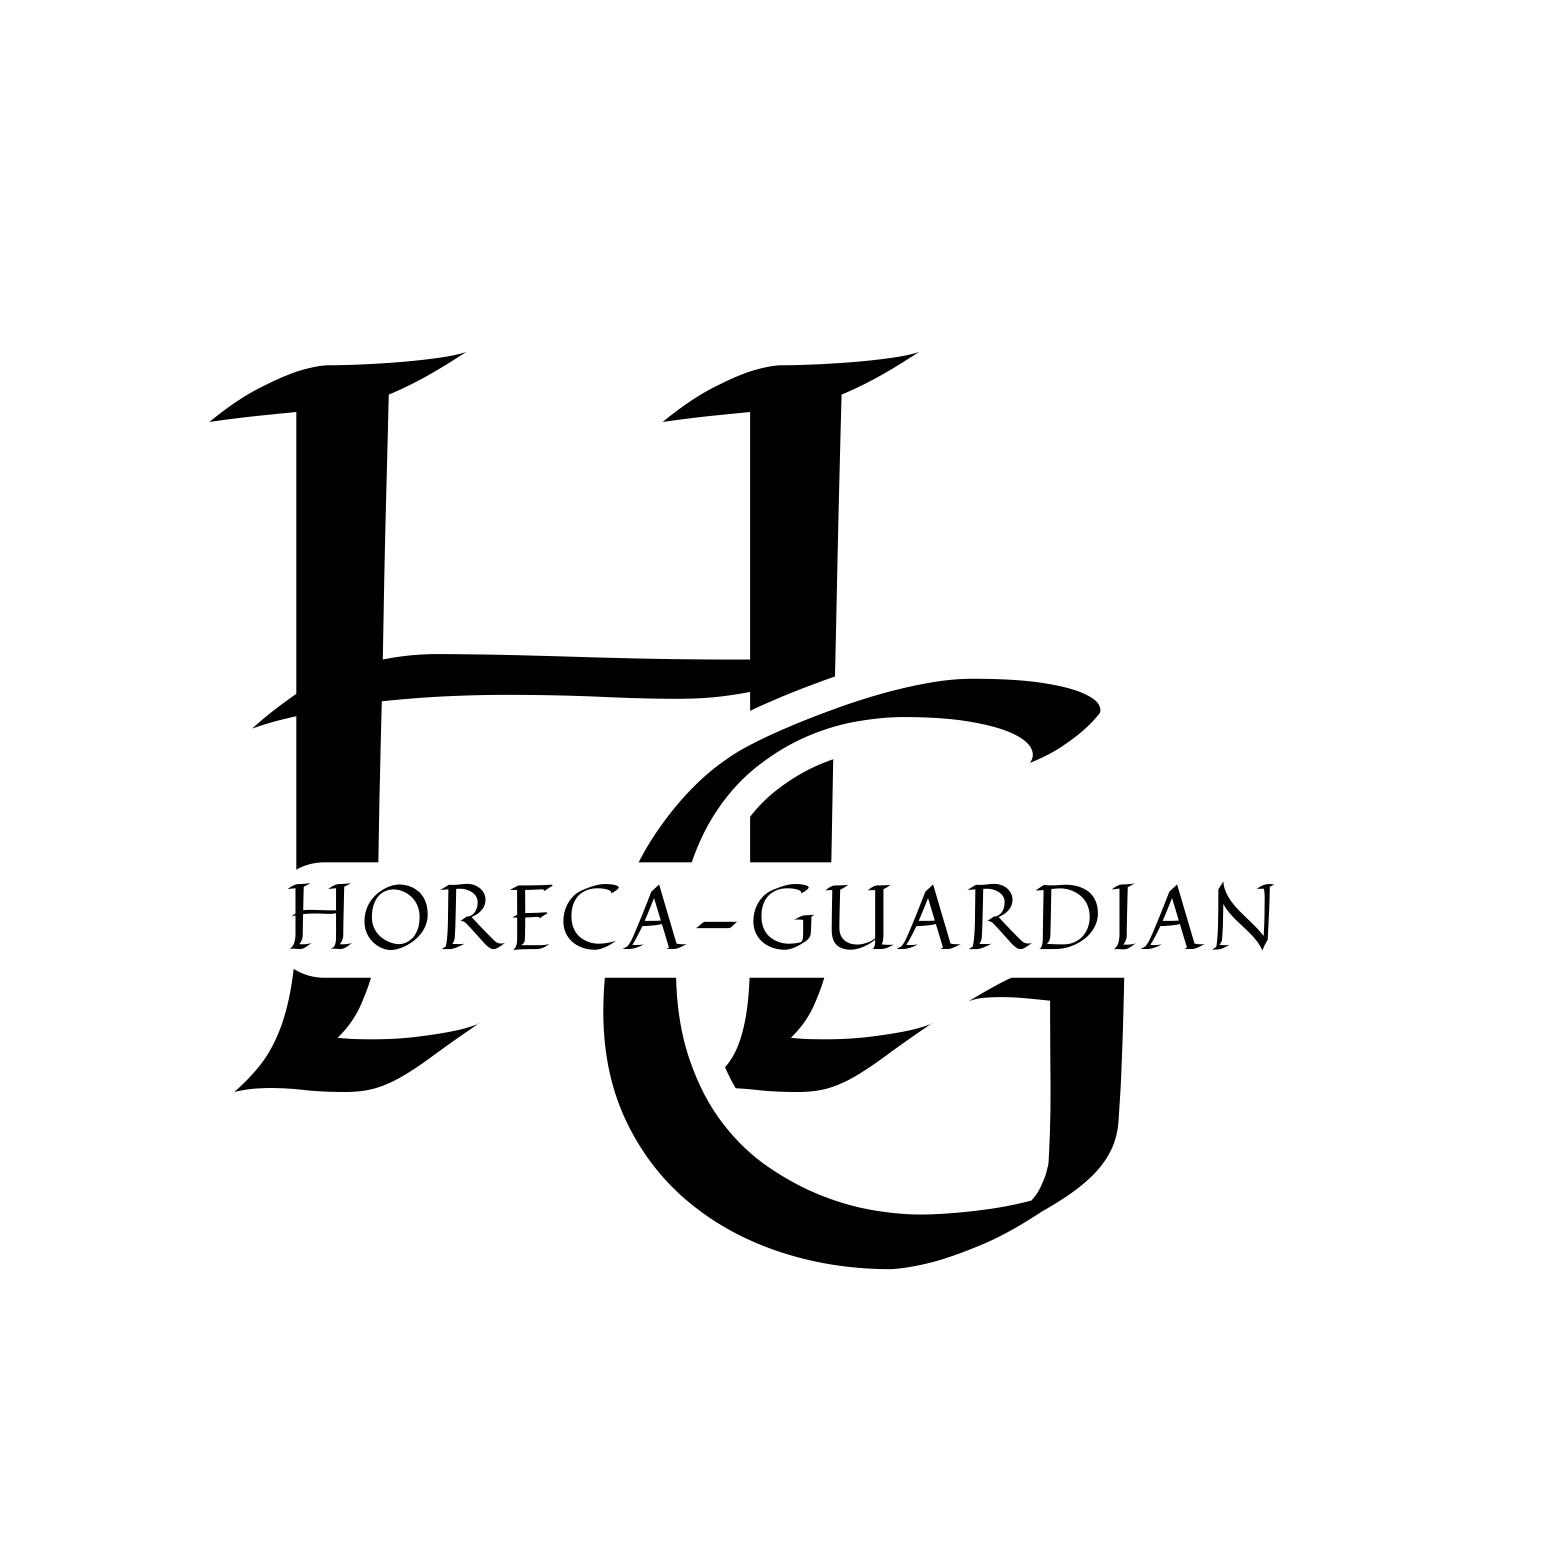 Horeca Logo